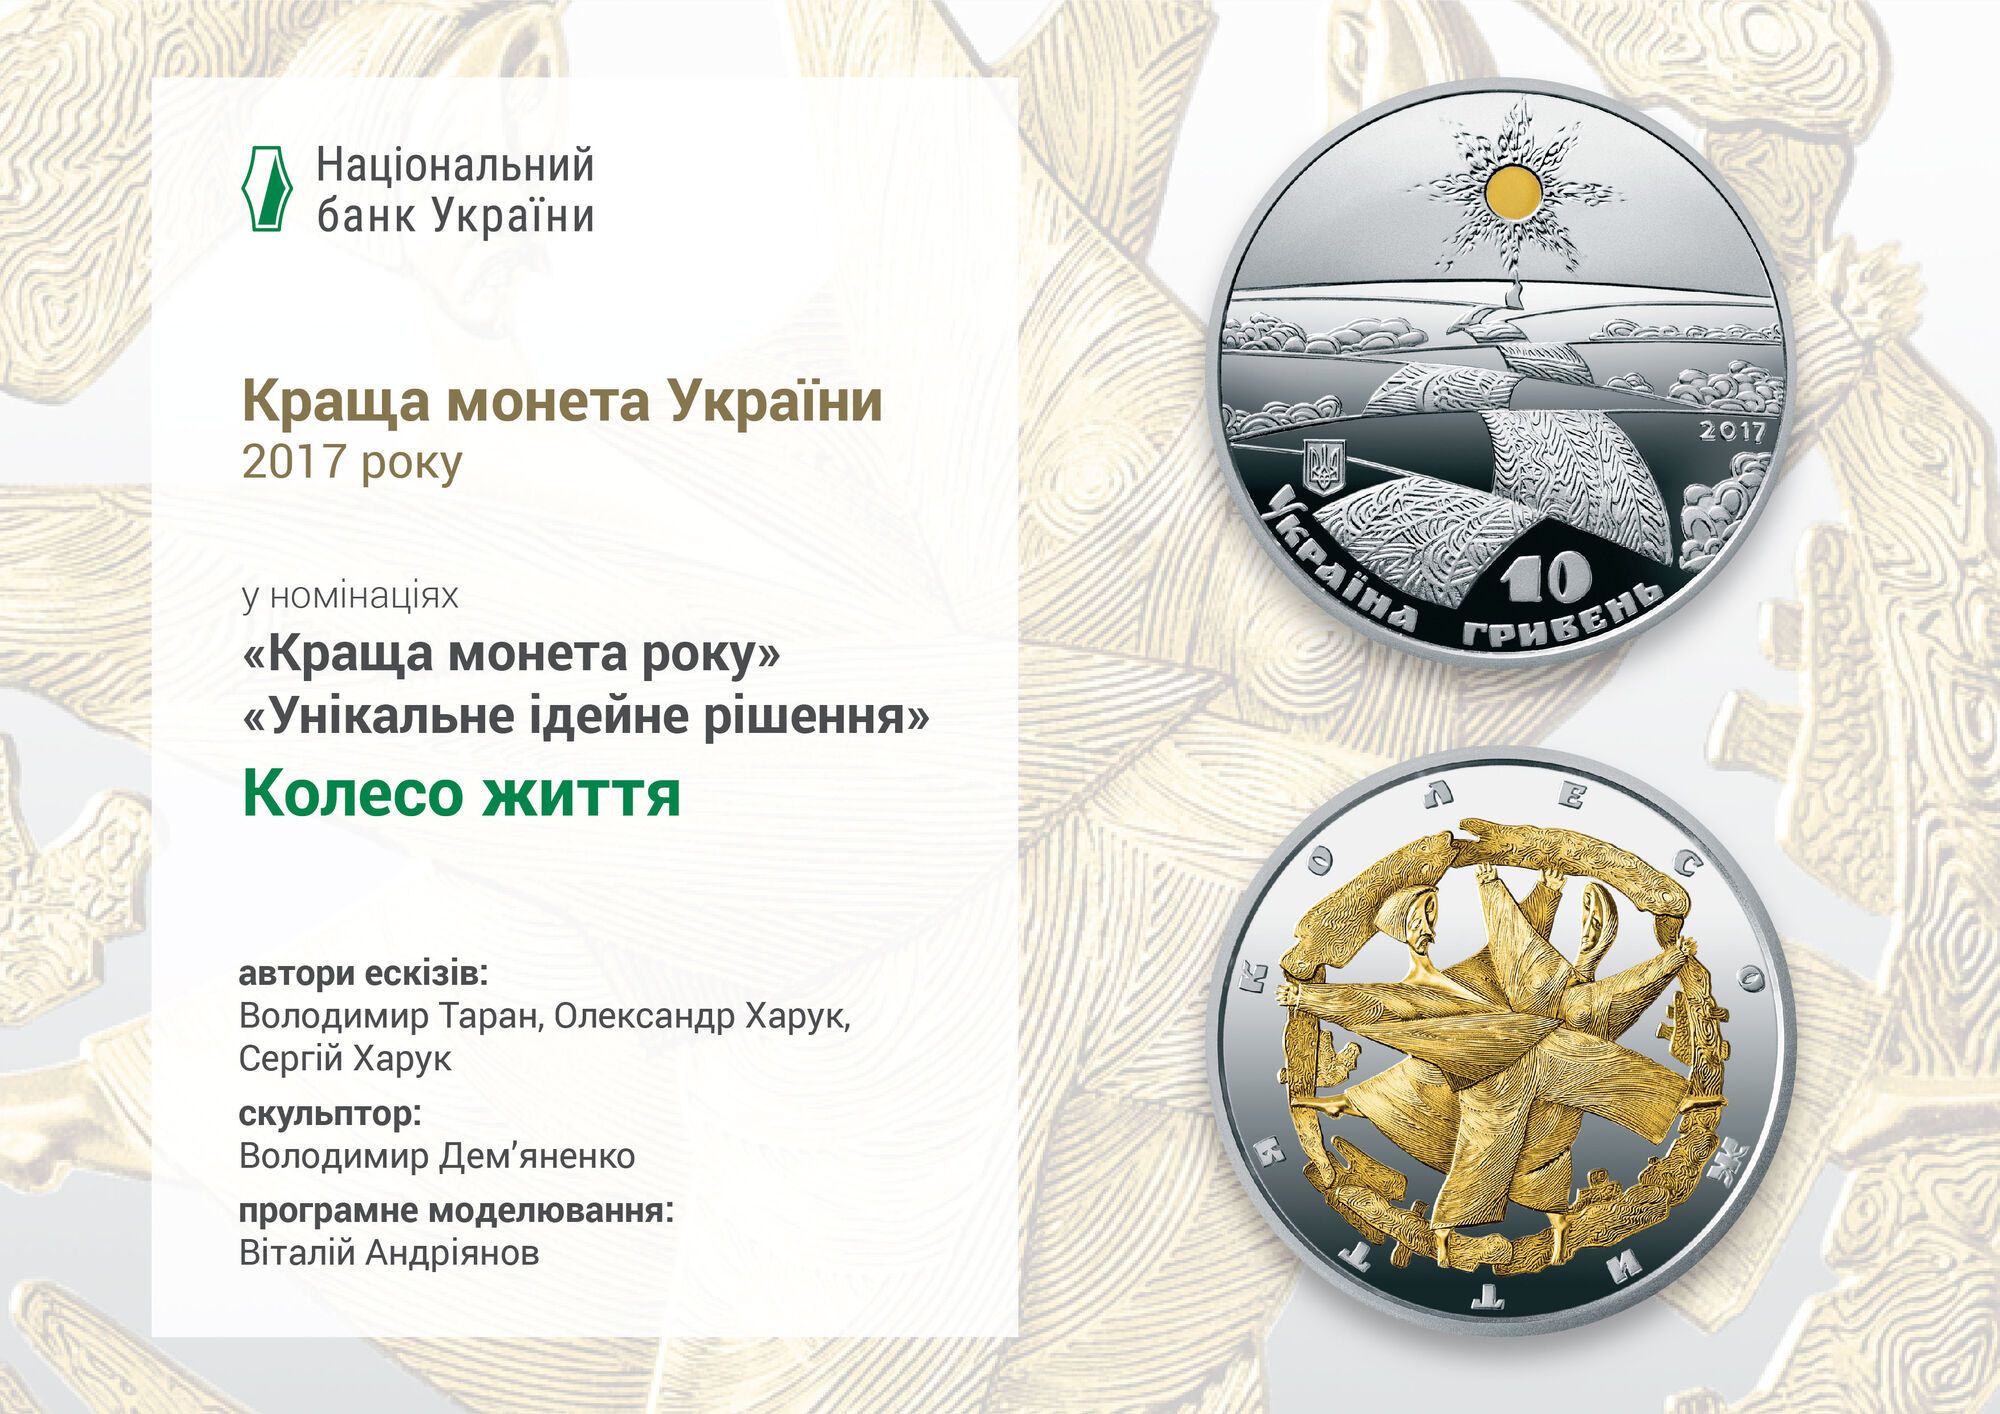 "Революция и колесо жизни": НБУ показал лучшие памятные монеты Украины